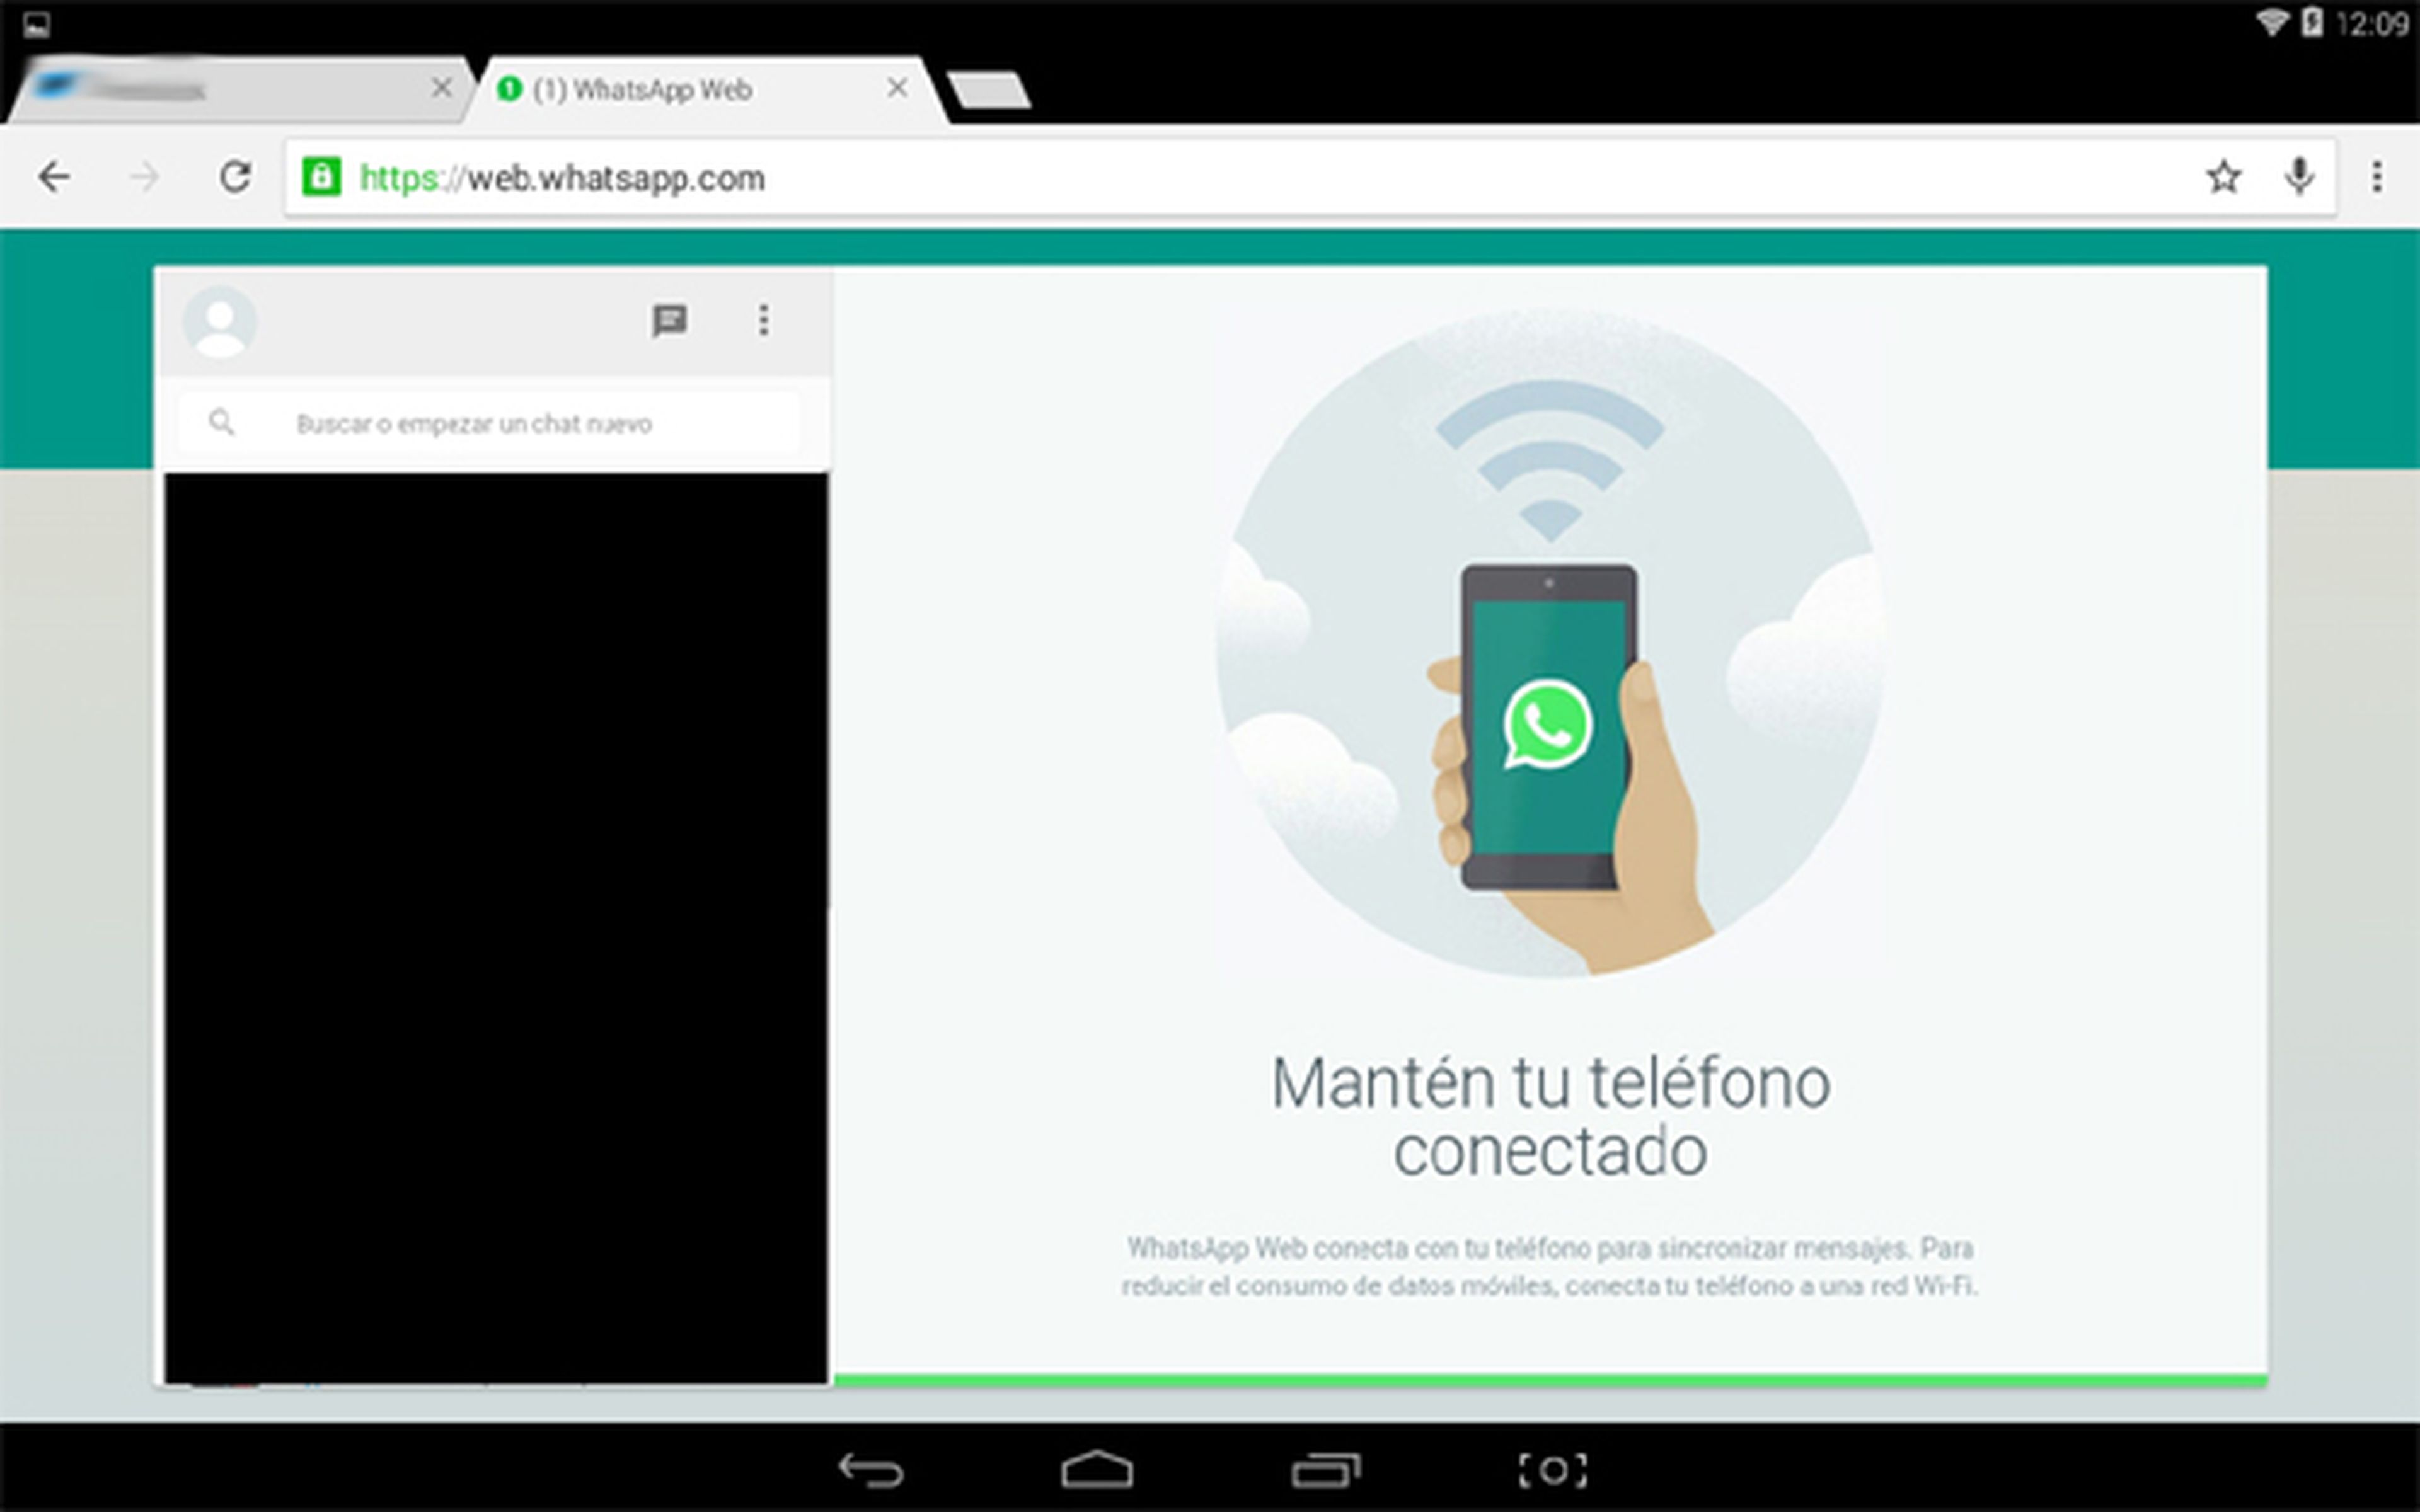 WhatsApp Web en una tablet Android